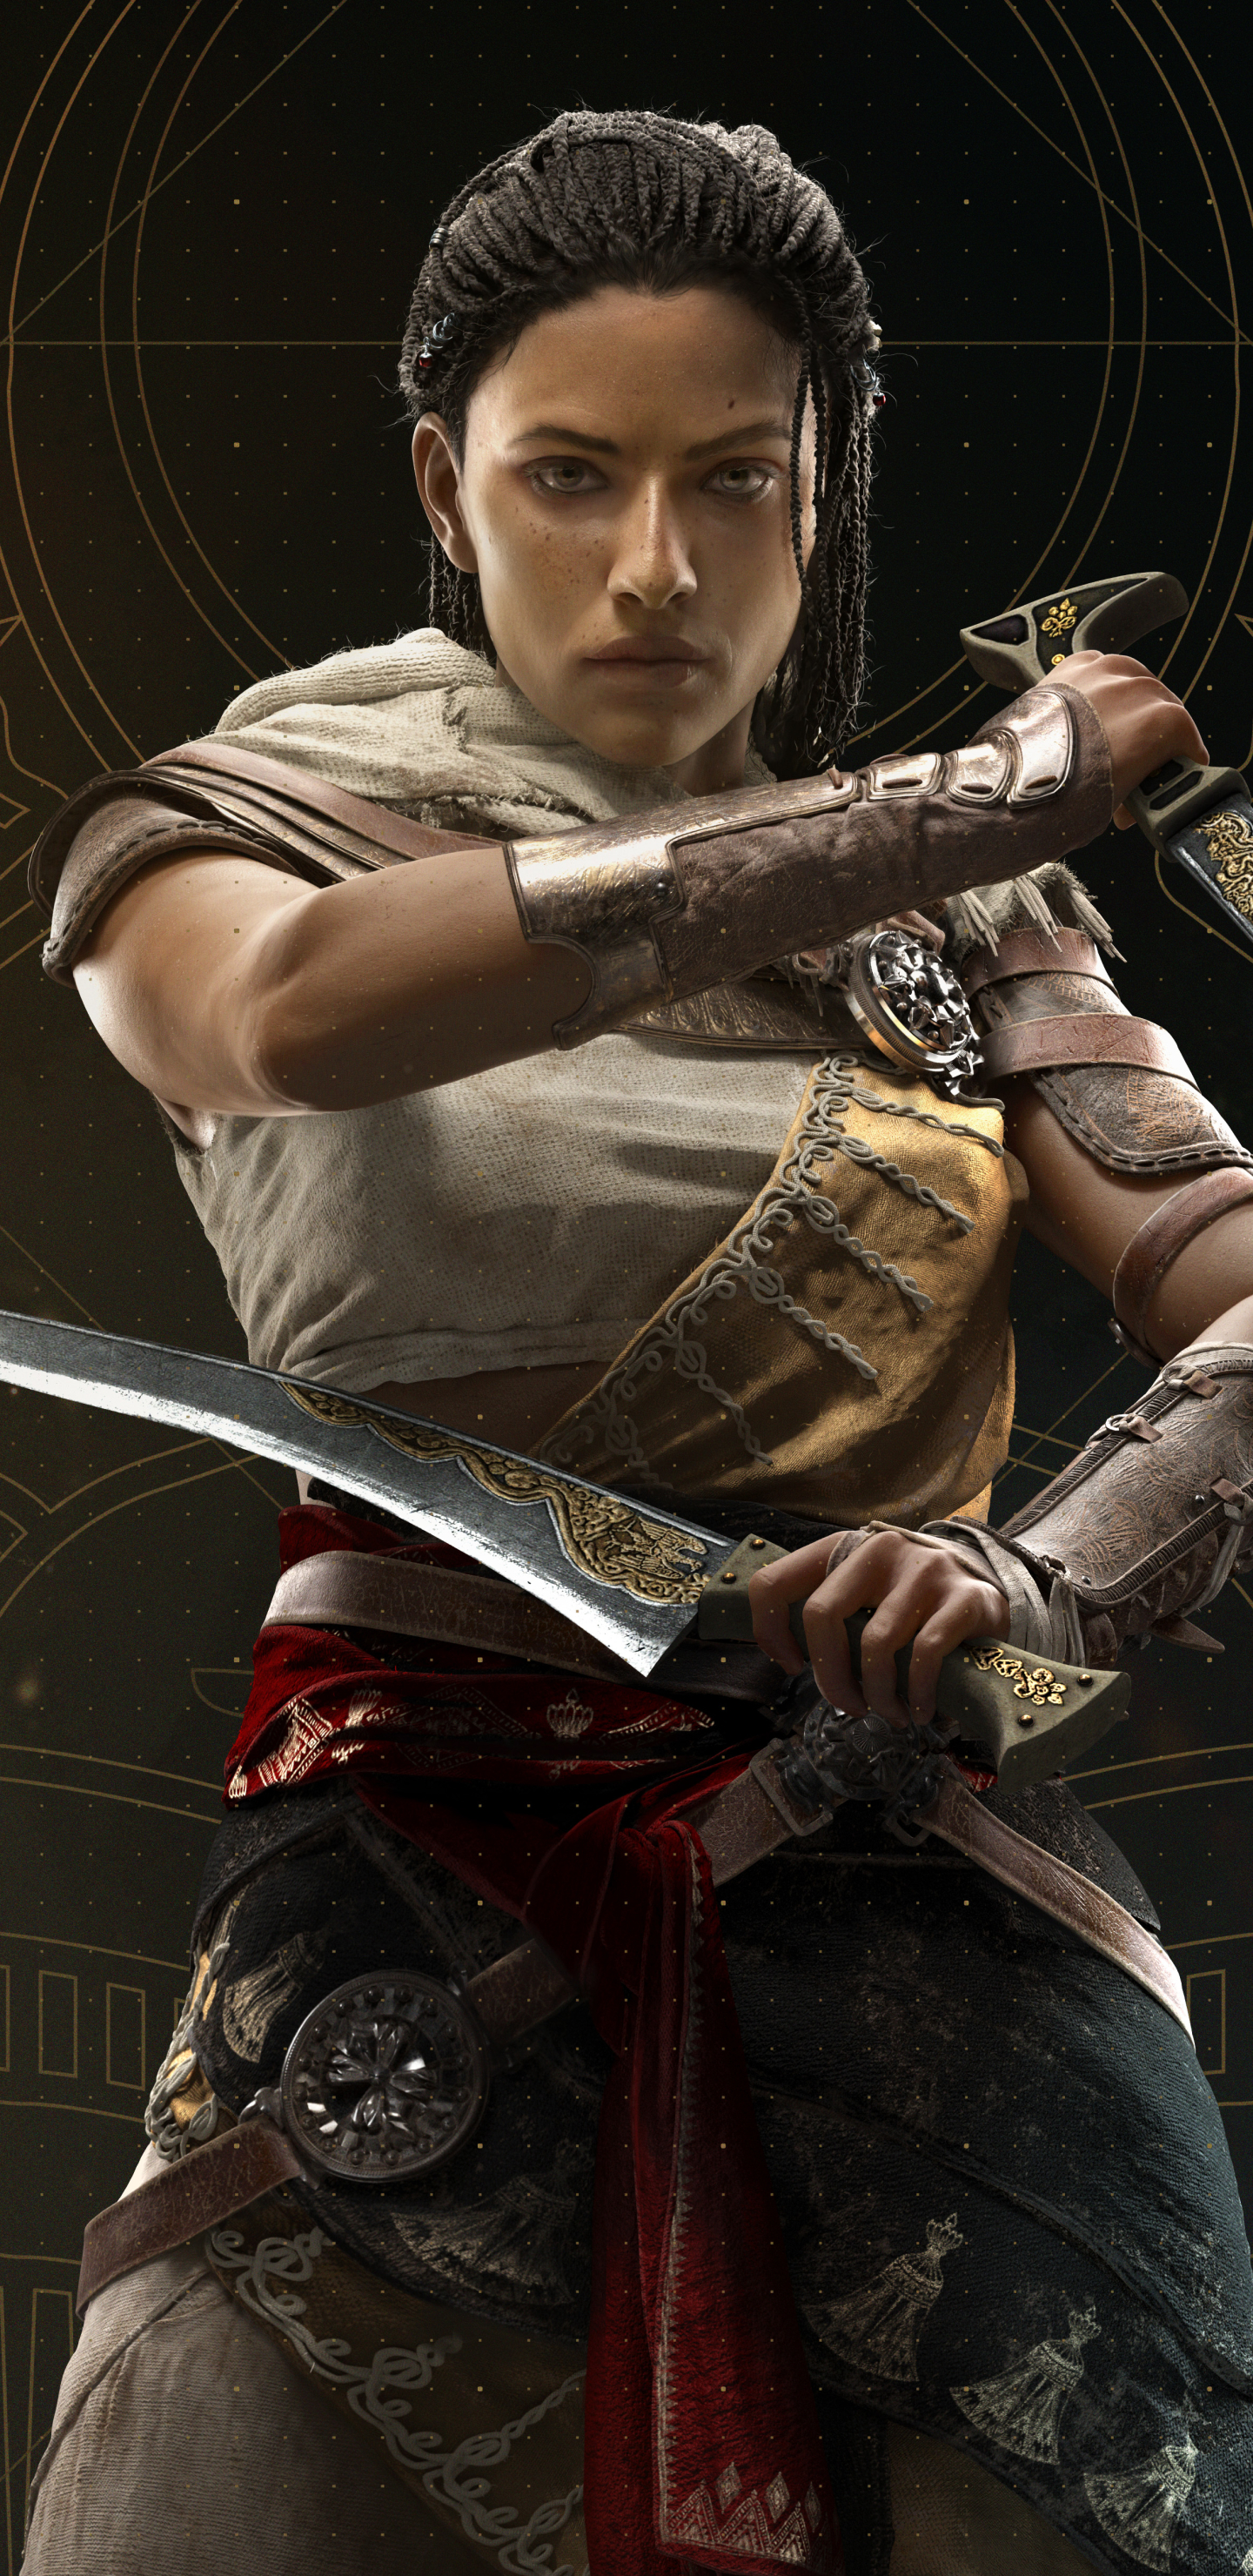 Скачать обои бесплатно Видеоигры, Кредо Ассасина, Assassin's Creed: Истоки картинка на рабочий стол ПК